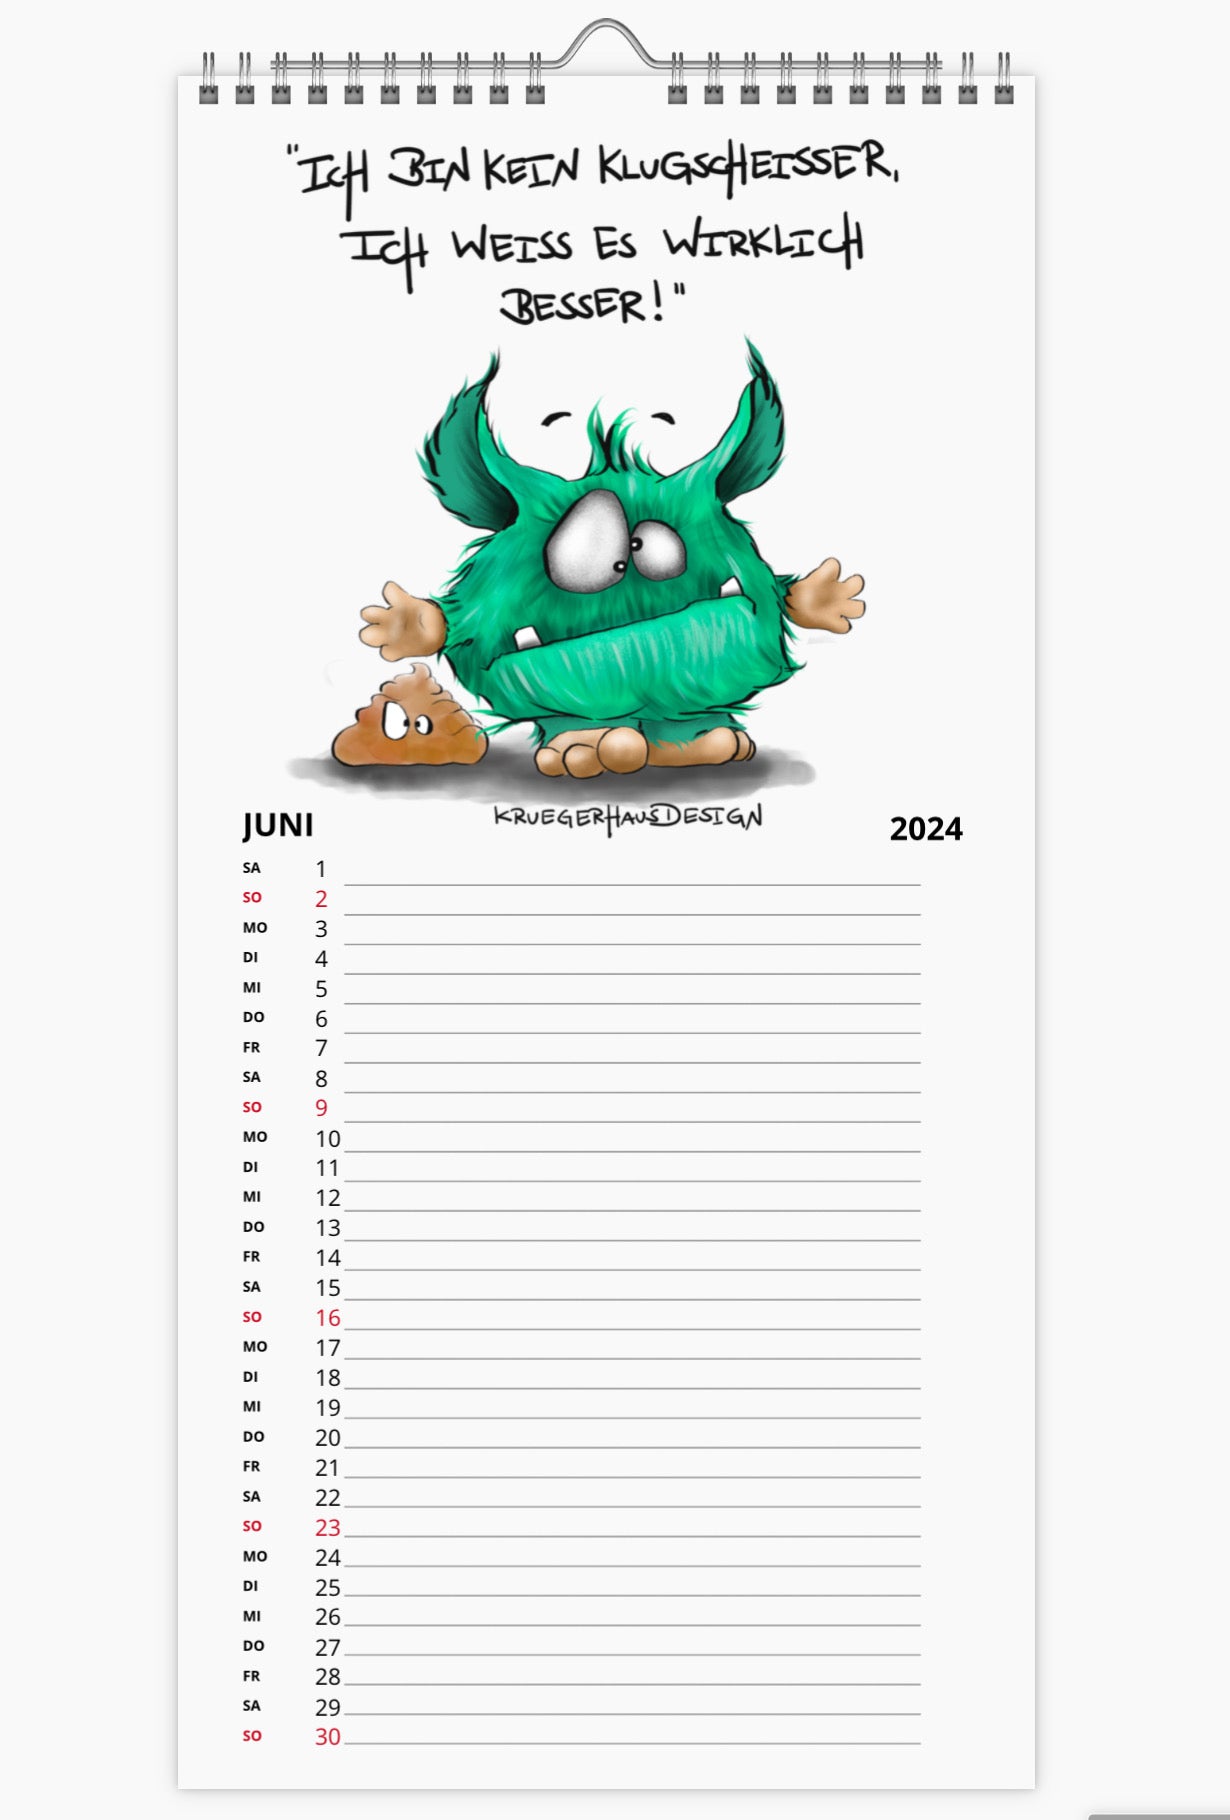 Kalender Terminkalender Küchenkalender groß  Kruegerhausdesign Monster 2024 Design  2